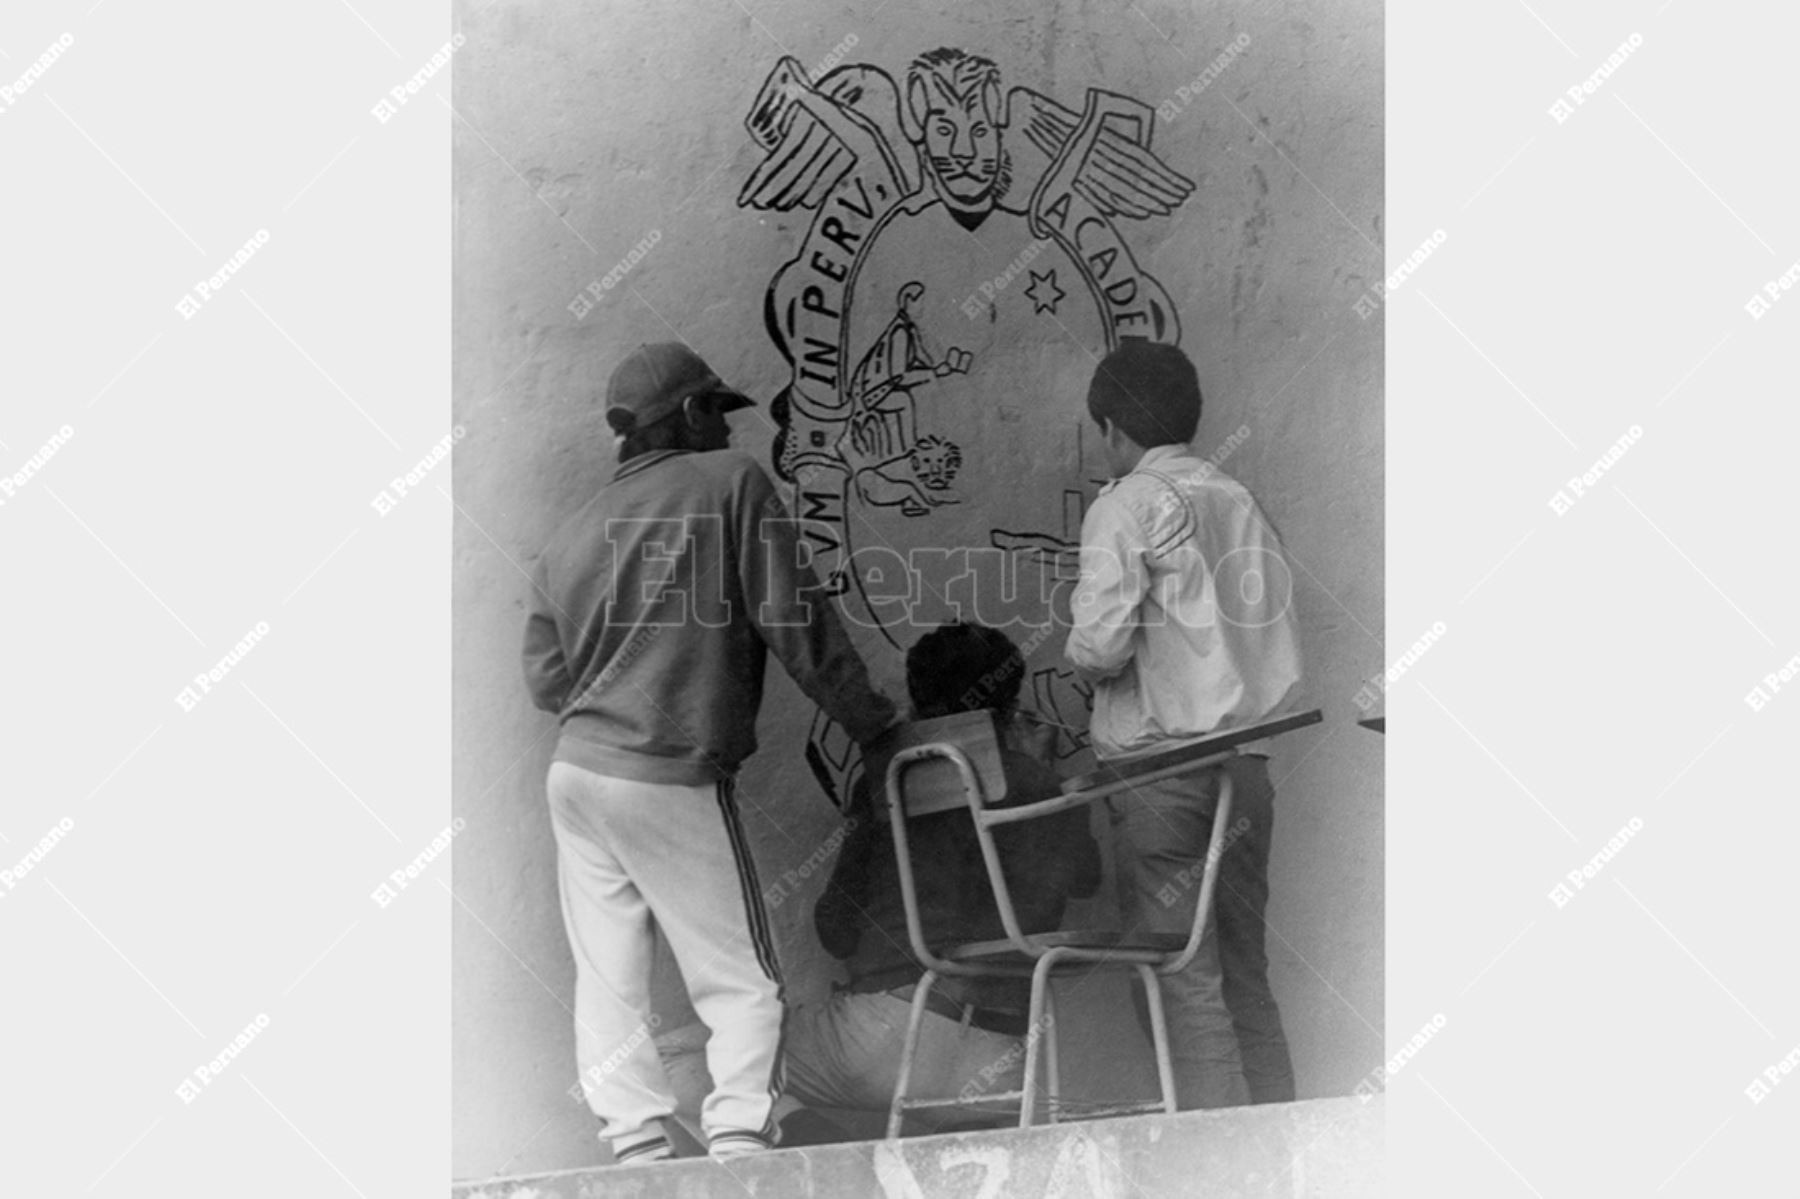 Lima - 21 junio 1991 / Un grupo de estudiantes pinta el escudo de San Marcos en uno de los muros de la Ciudad Universitaria.  Foto: Archivo Histórico de El Peruano / Cox